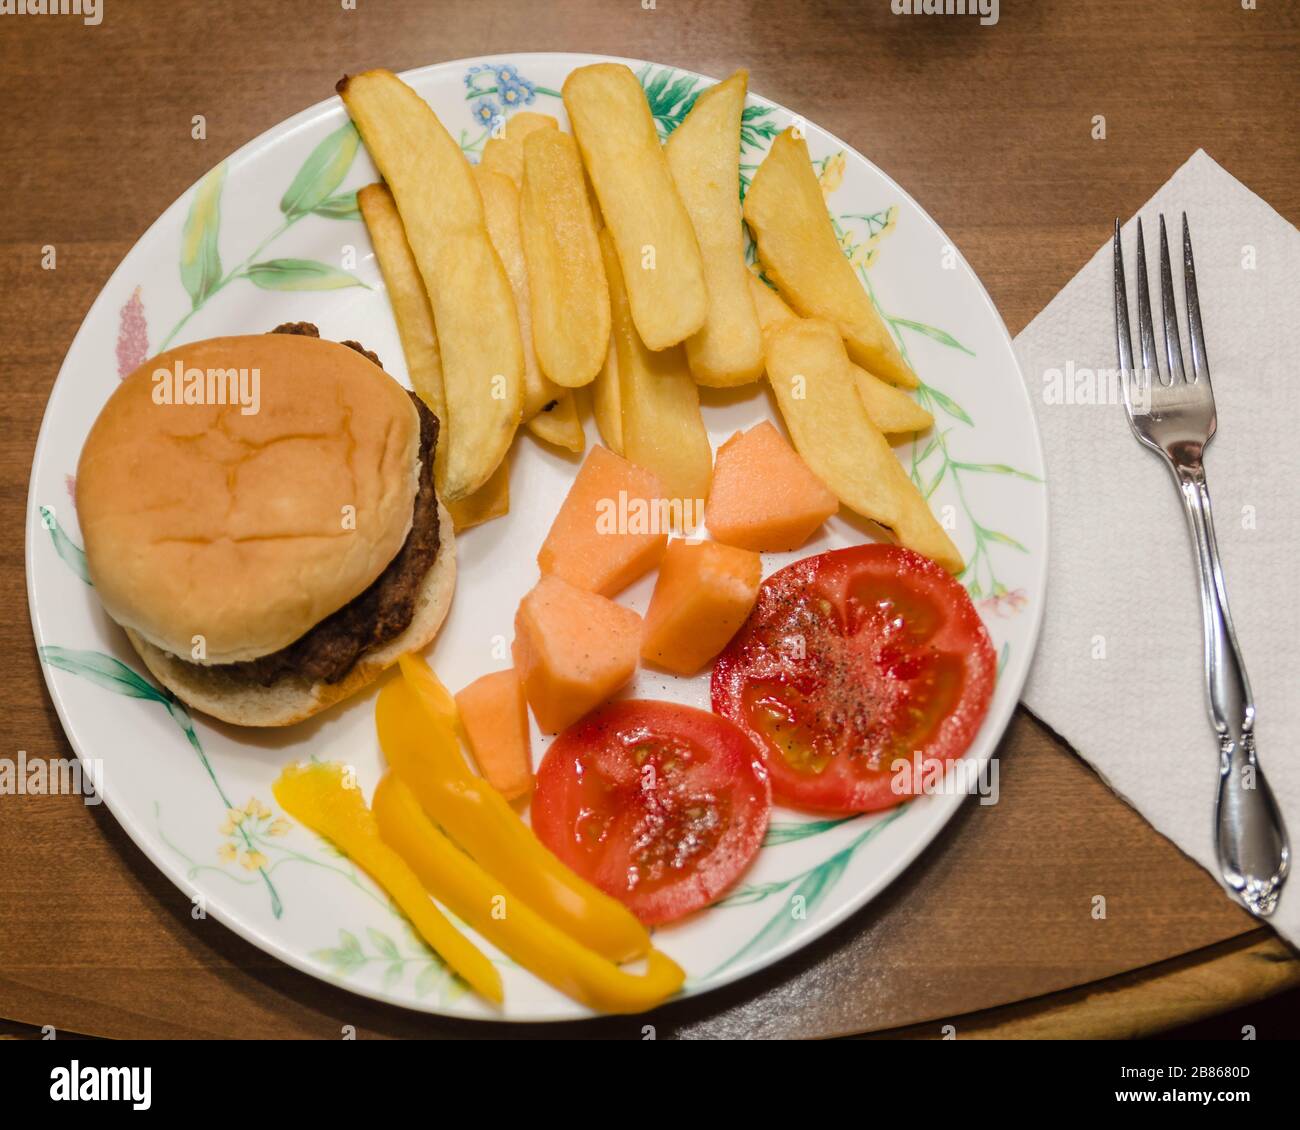 le premier dîner de printemps, hamburgers, frites, melon, tomates et poivrons Banque D'Images